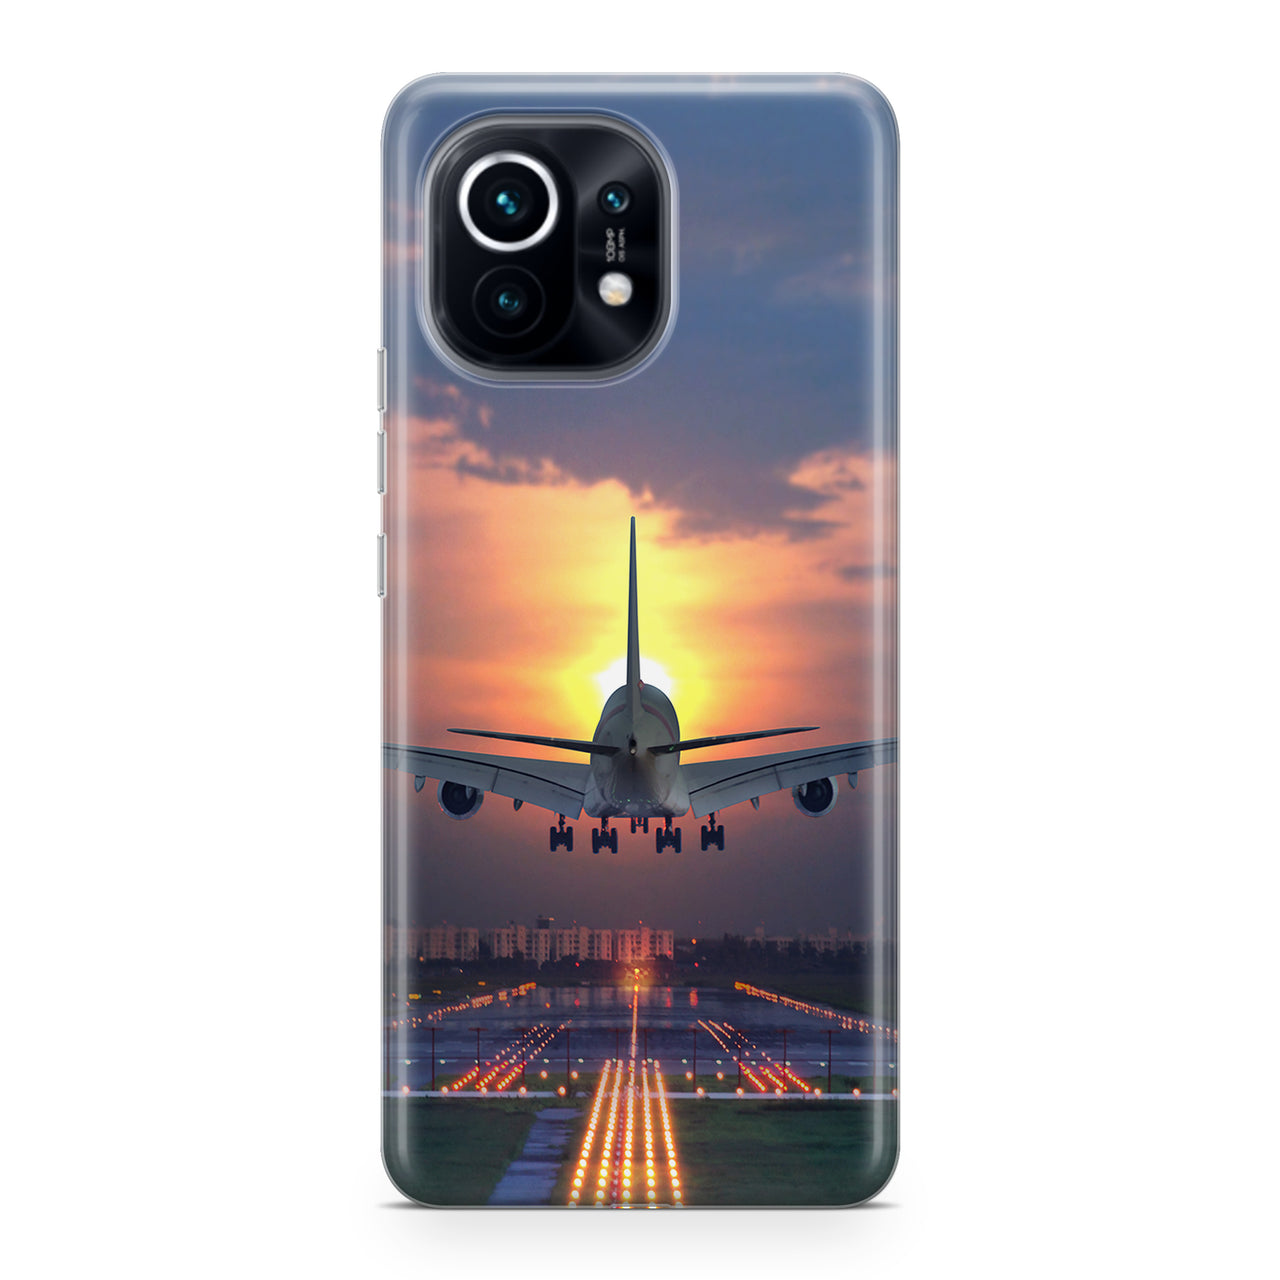 Super Airbus A380 Landing During Sunset Designed Xiaomi Cases